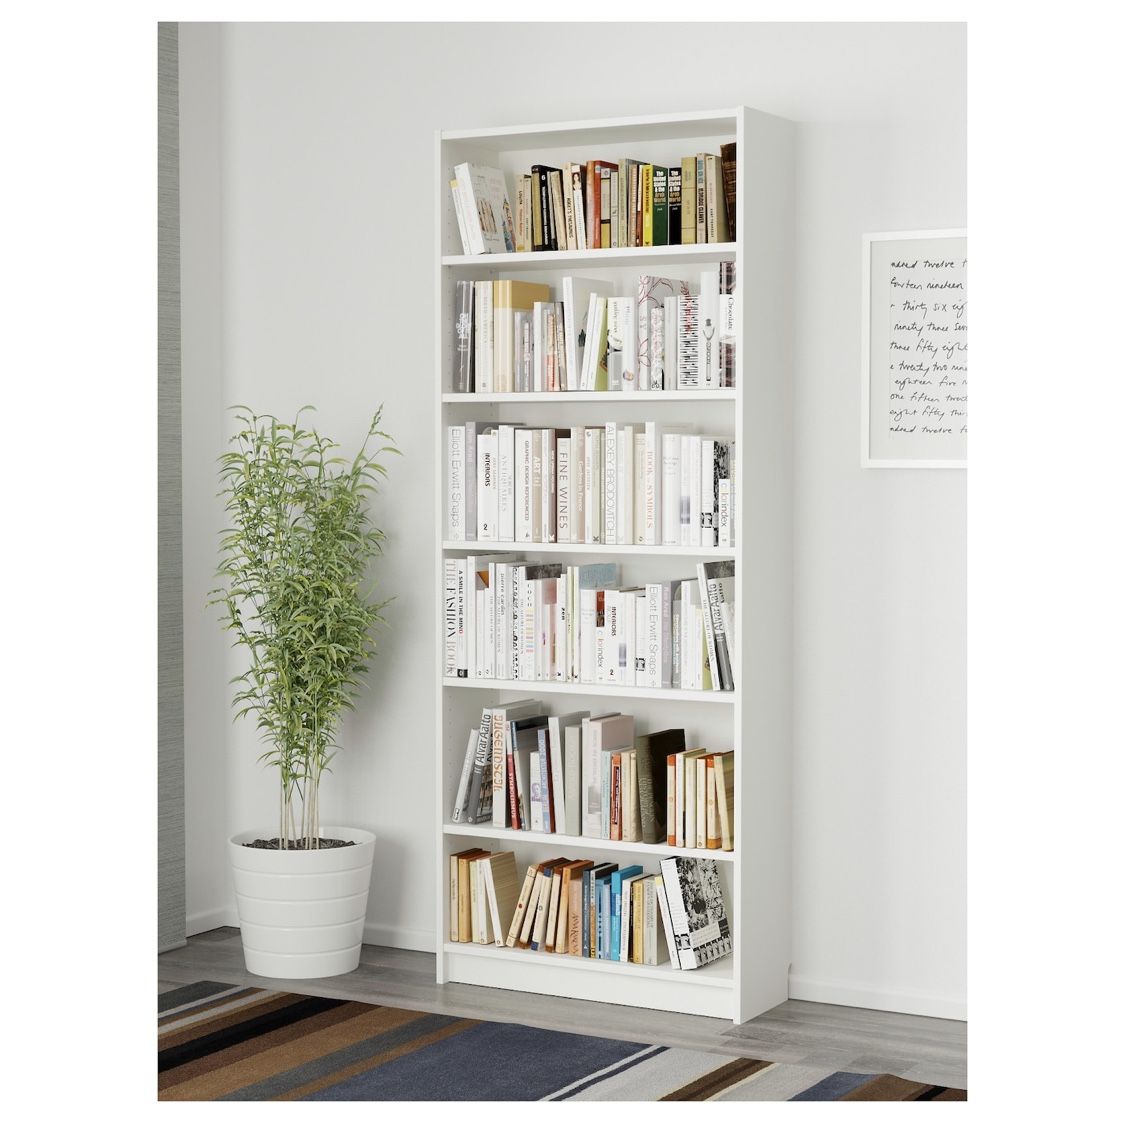 Two bookshelves- White